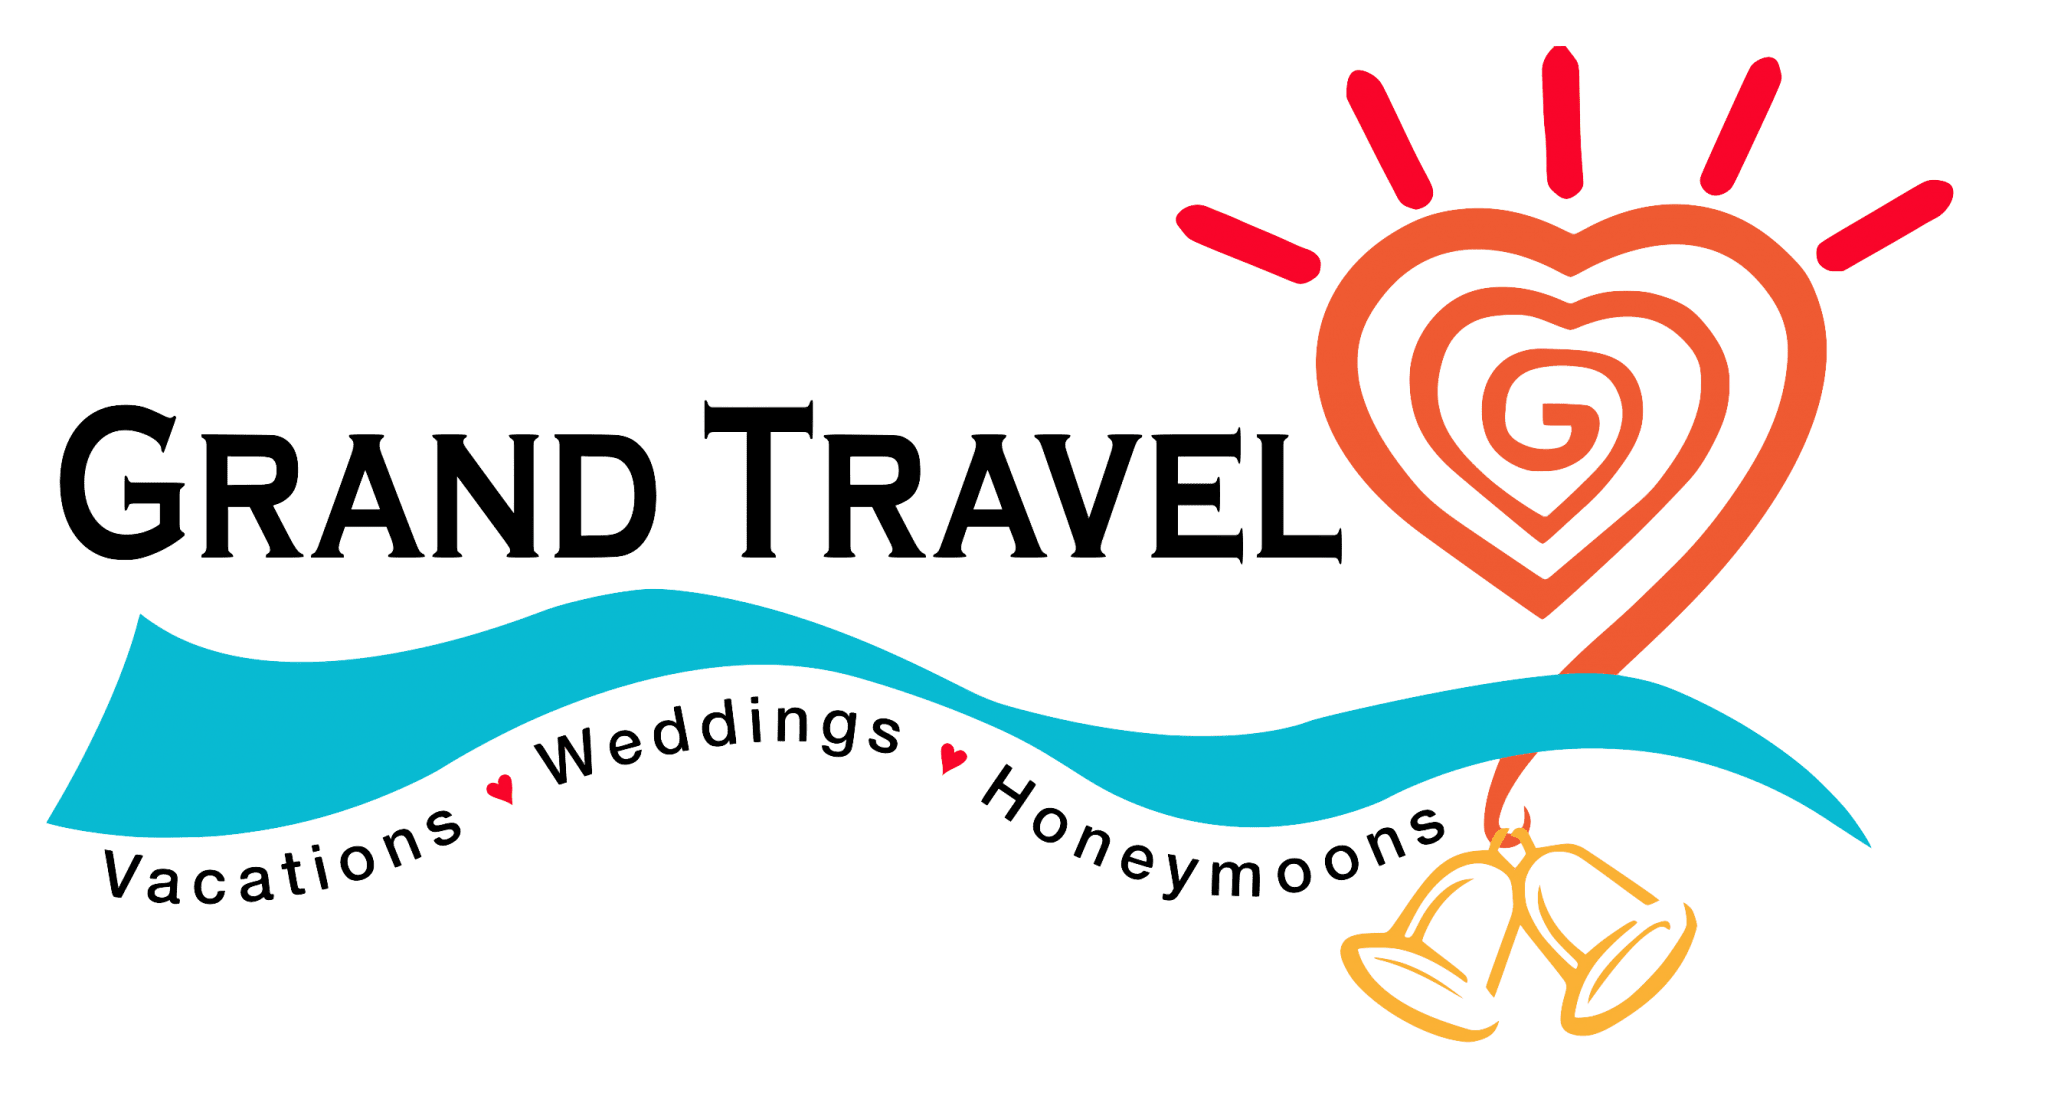 Grand Travel Cruise